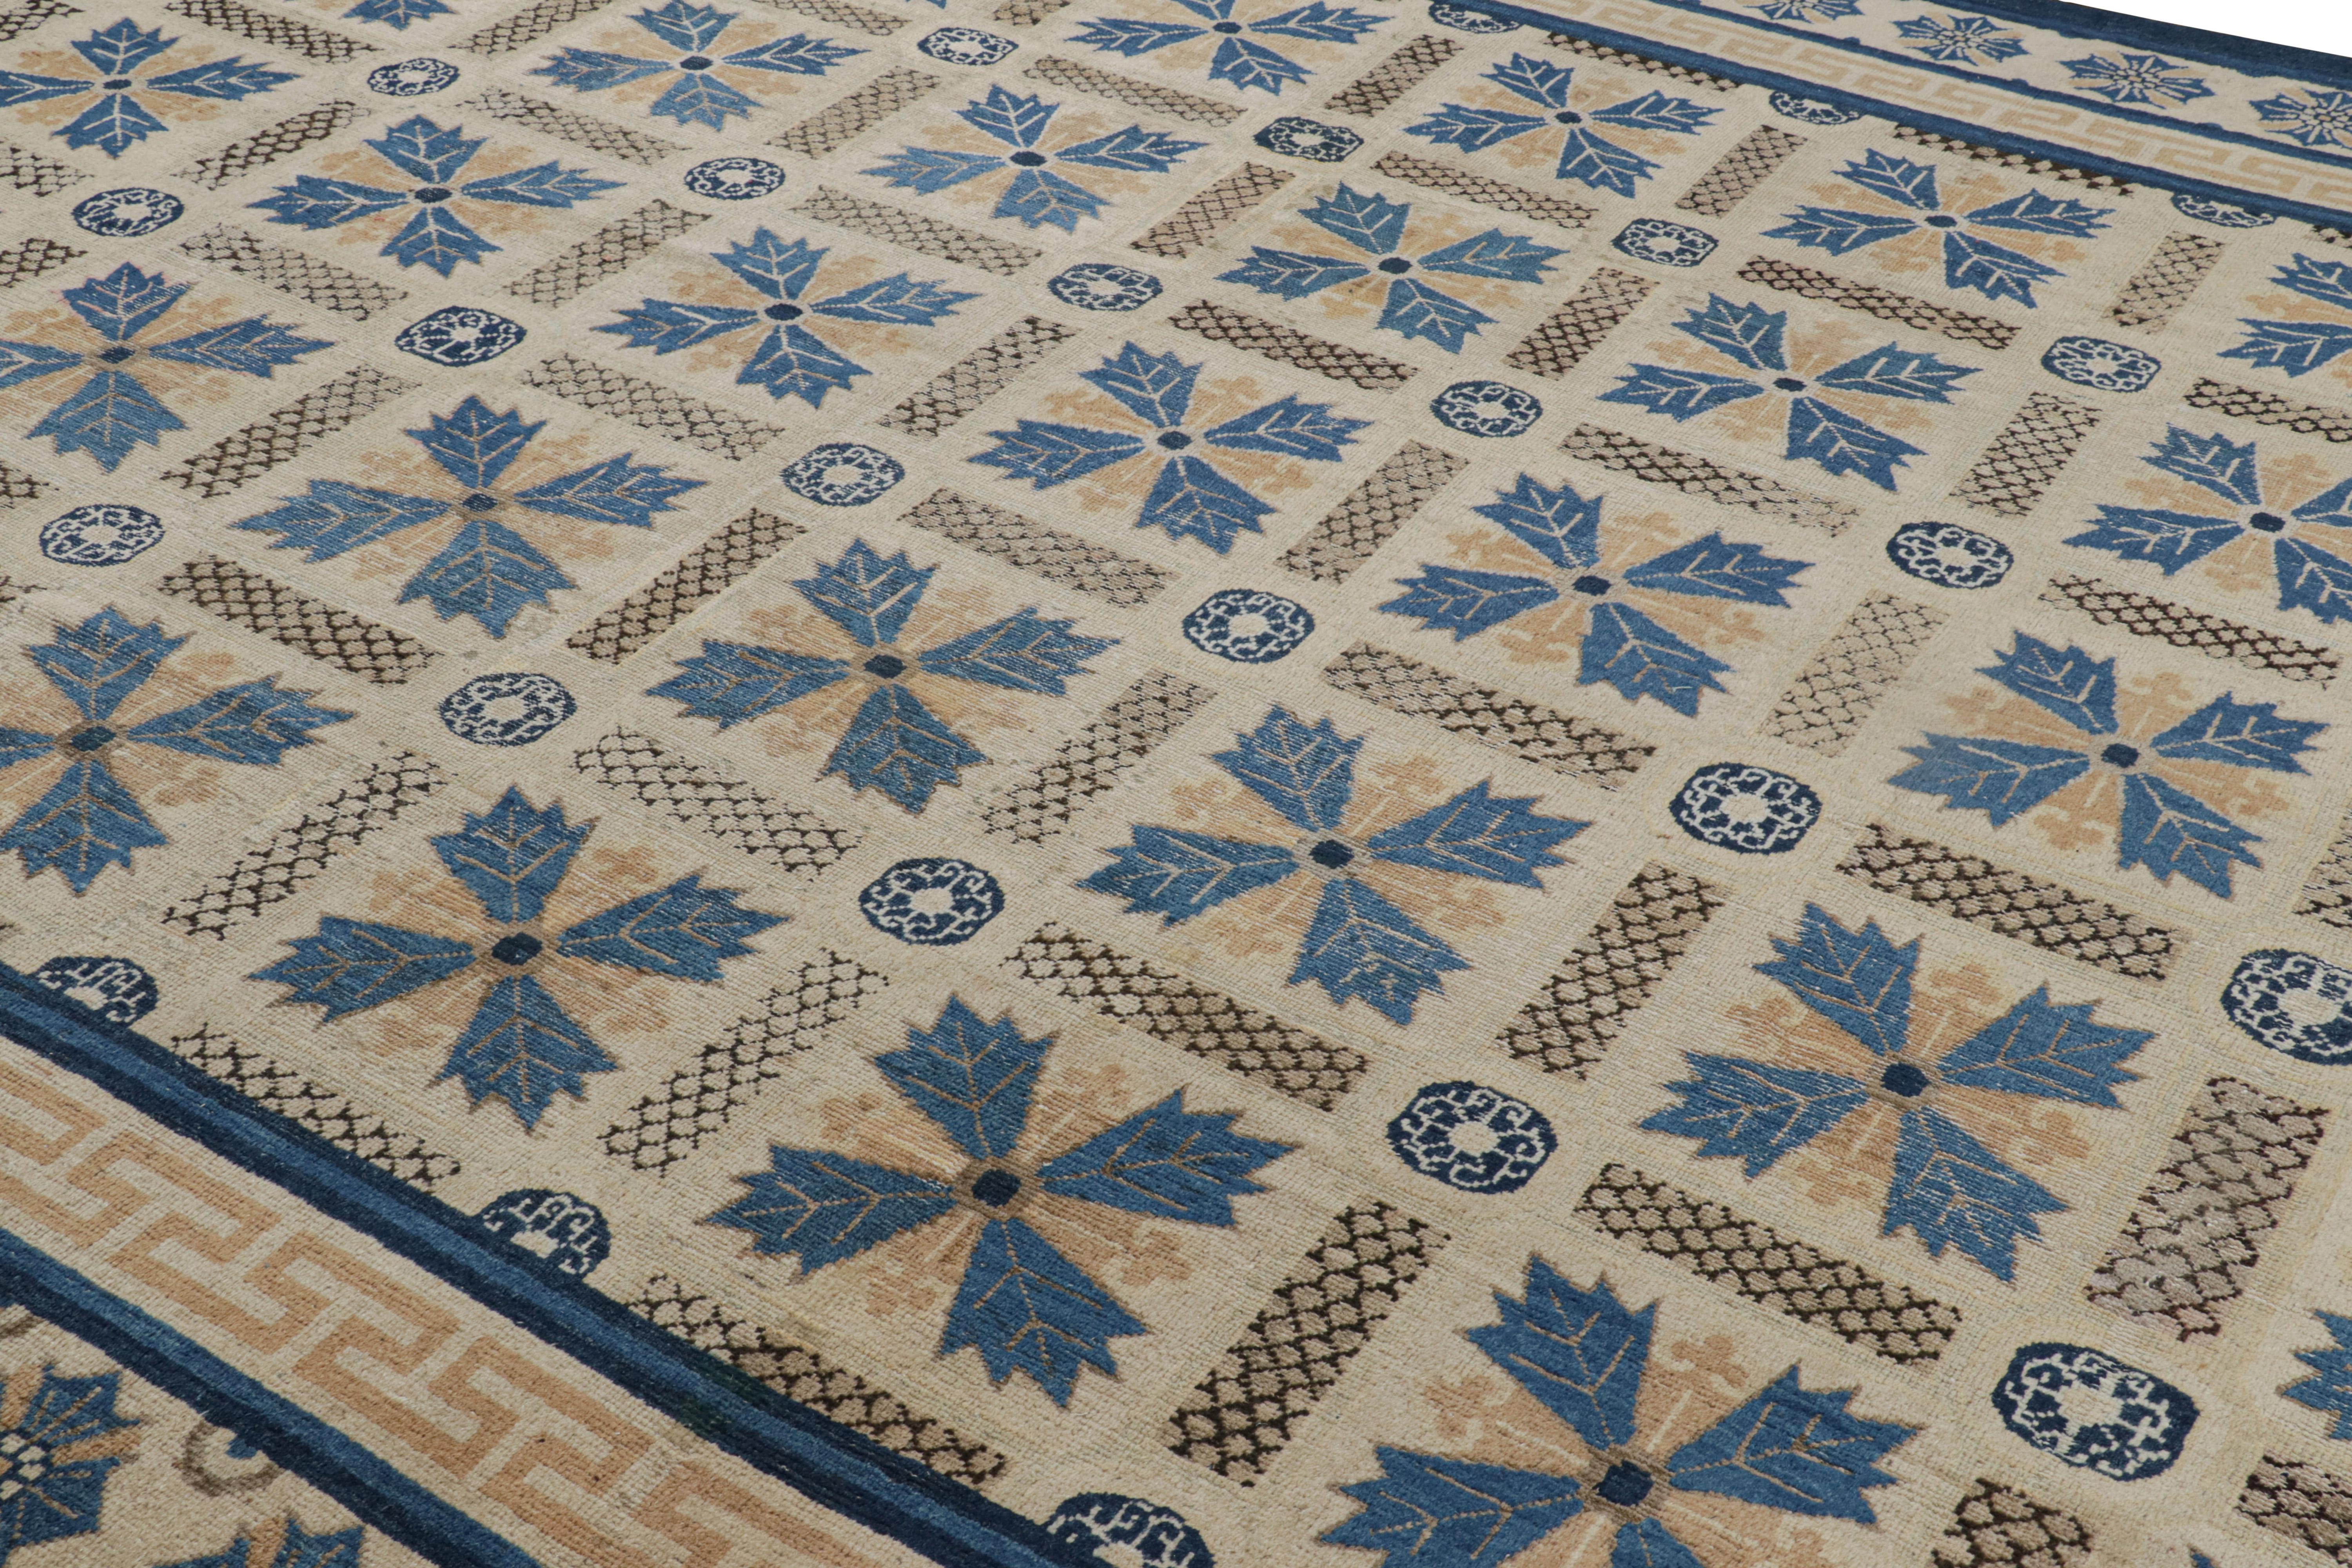 Dieser seltene antike Ningxia-Teppich im Format 10x17, handgeknüpft aus Wolle, stammt aus China (ca. 1920-1930) und gehört zu unserer ganz besonderen Auswahl an antiken Sammlerstücken, wobei jedes Stück aufgrund seines königlichen Designs und seiner